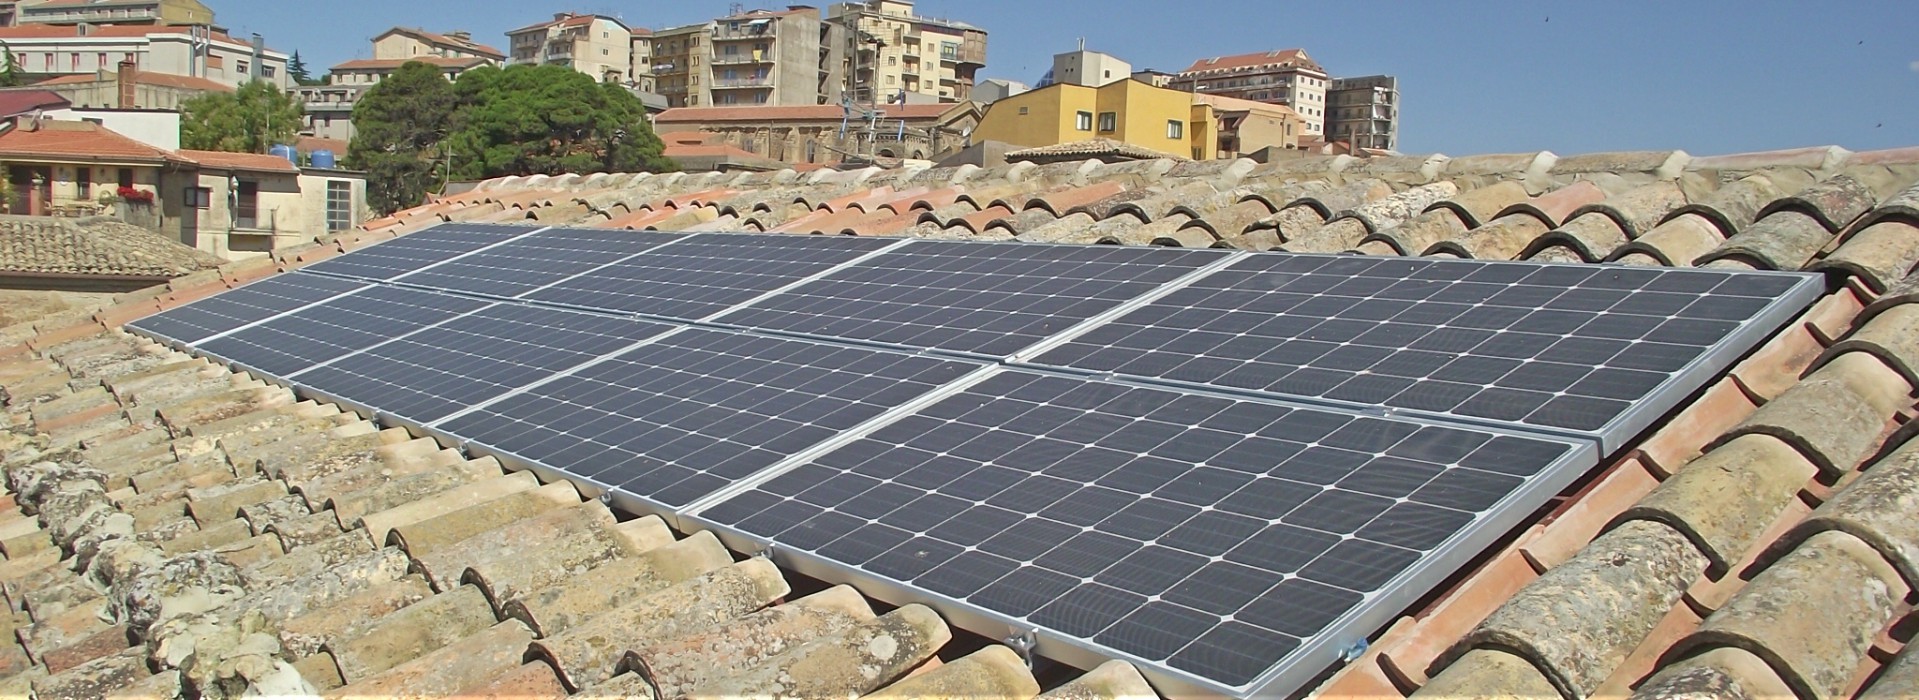 Pannelli fotovoltaici su tetti antichi